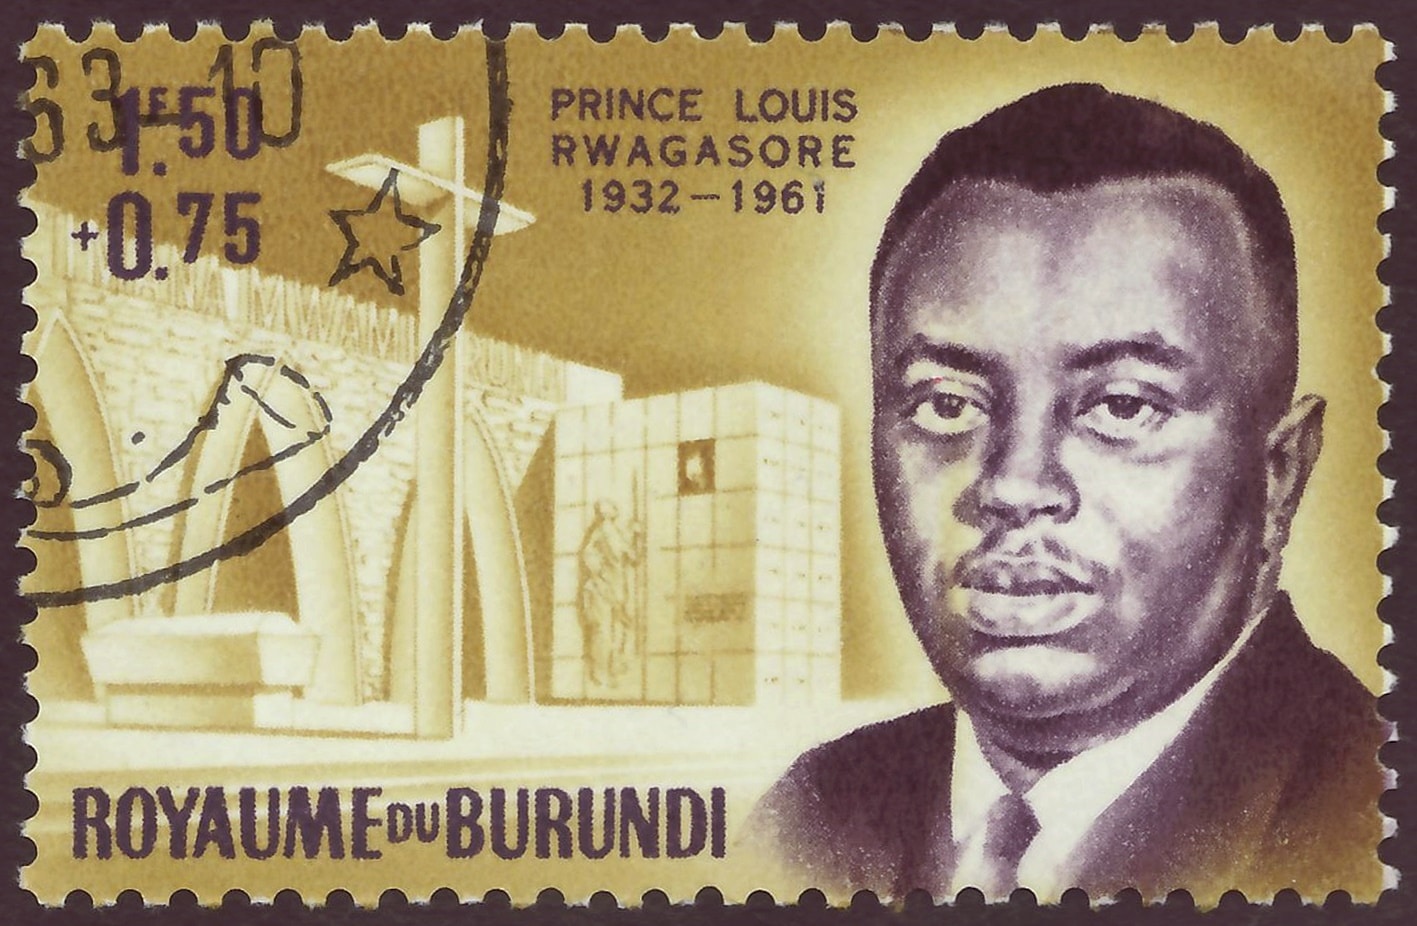 Timbre du Royaume du Burundi ; 1963 ; timbre semi-postal de l'émission "Souvenir du Prince Louis" ; motif du timbre avec un portrait du Prince Louis et l'entrée principale du "Mémorial du Prince Louis".
Wiki Commons